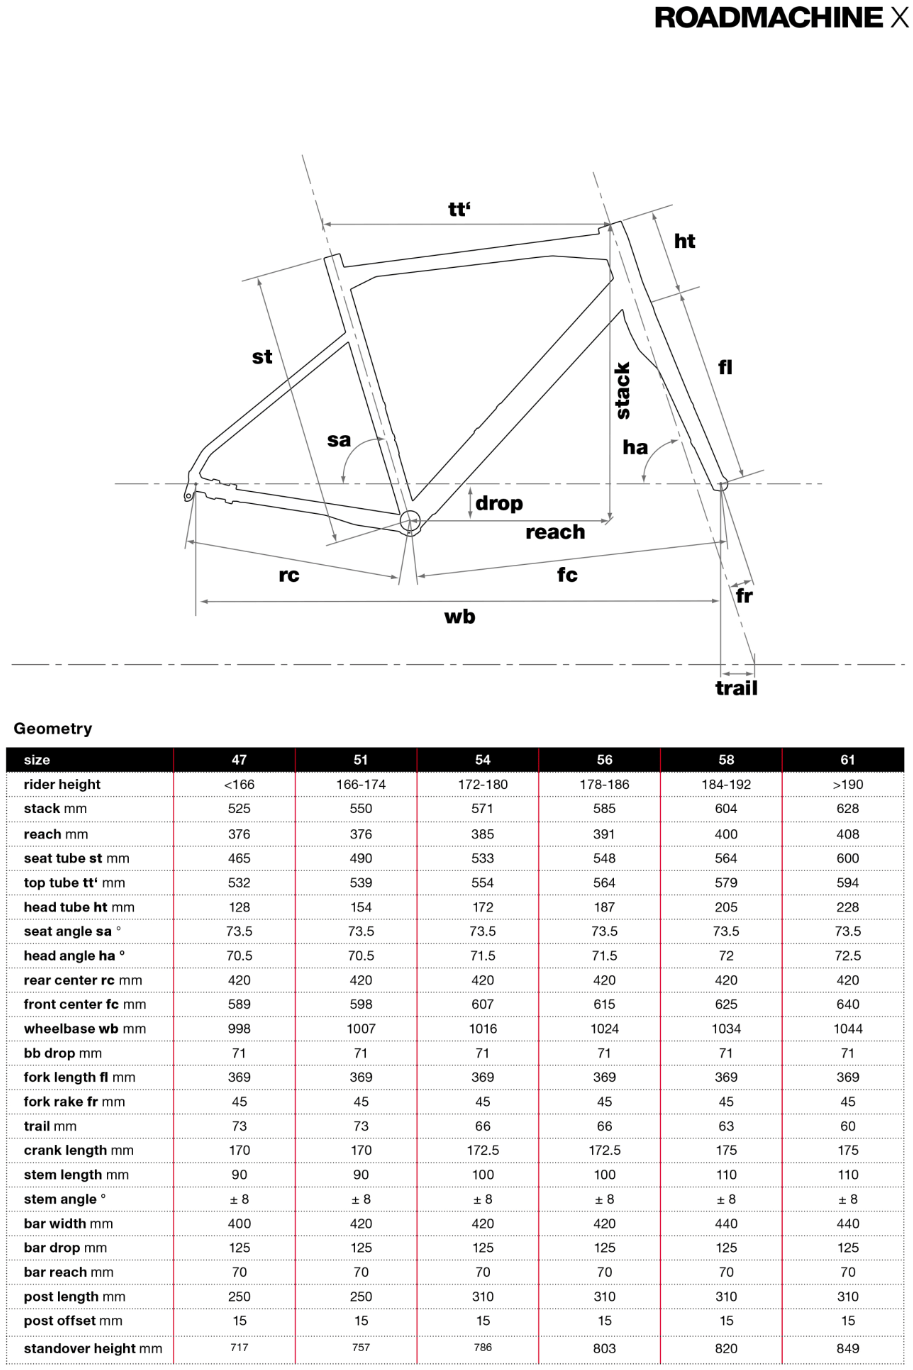 BMC Roadmachine X geometry chart